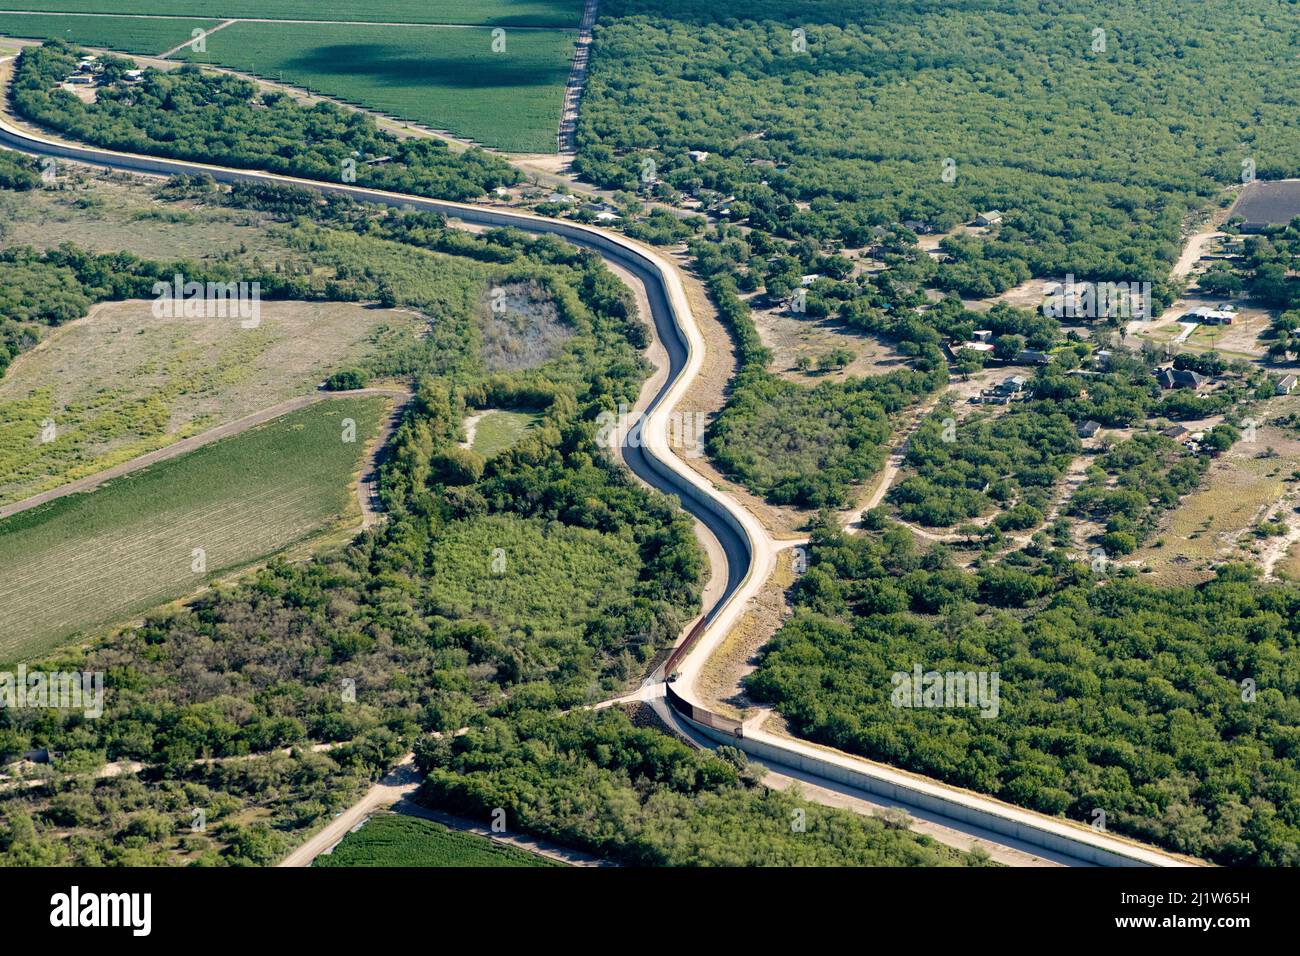 Vue aérienne du mur de la frontière à Mission, comté de Hidalgo, Texas, États-Unis. Juillet 2019. Banque D'Images